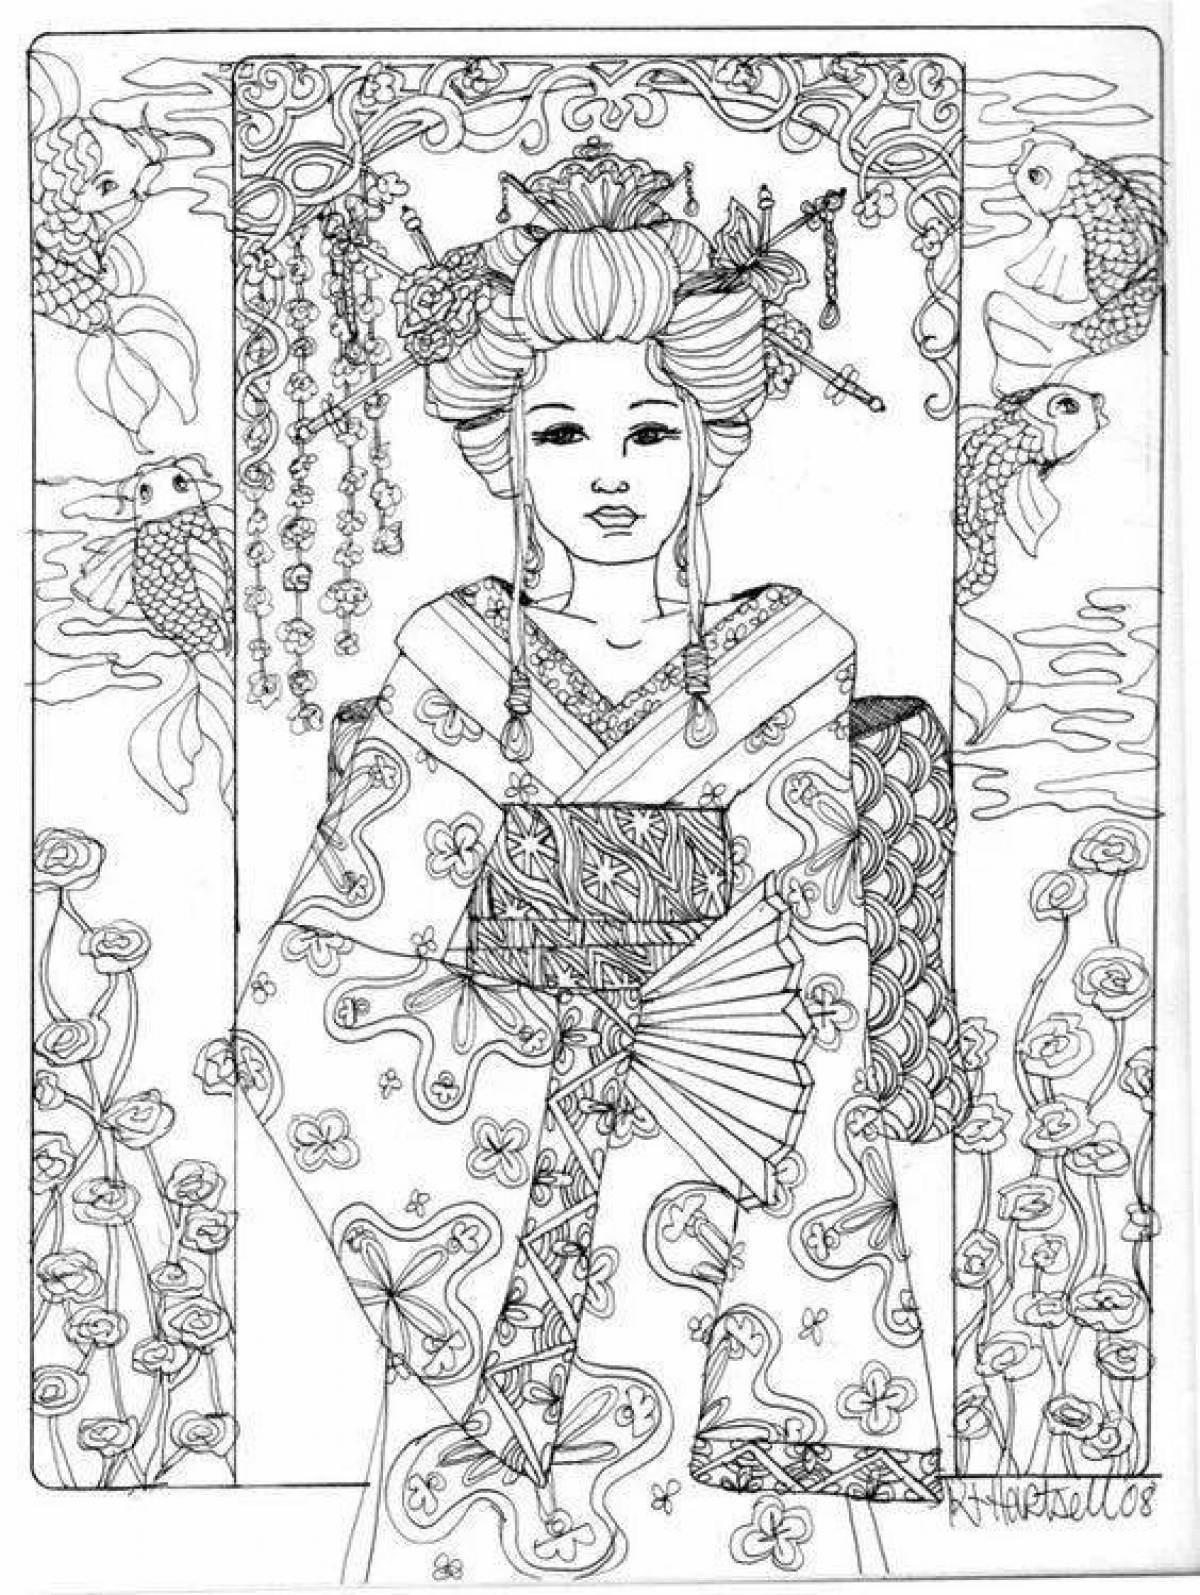 Exquisite geisha coloring book